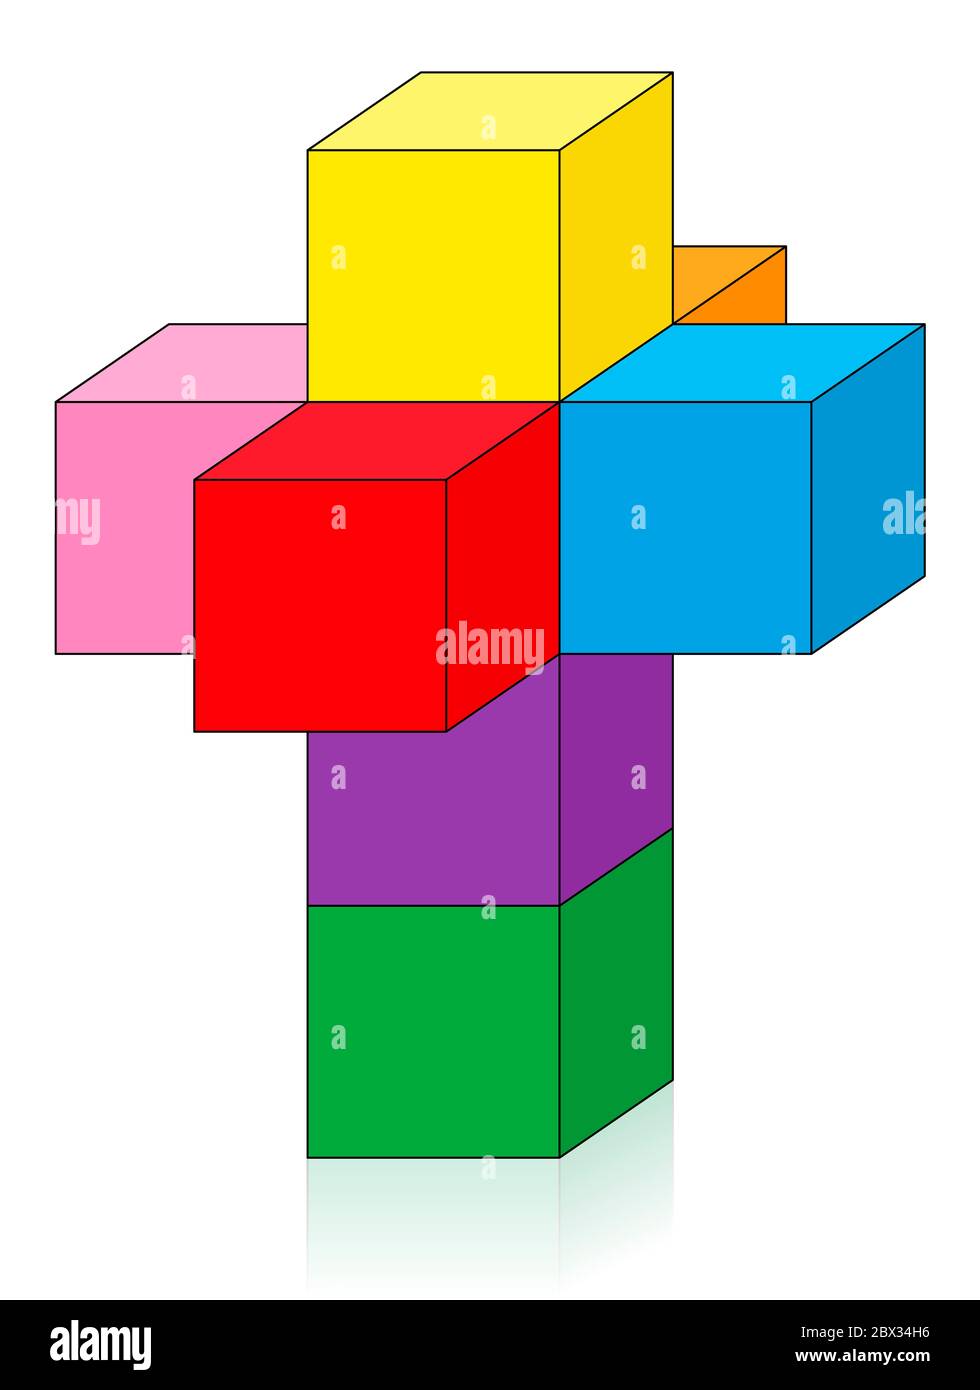 Netz eines Hypercubes, Tesseract oder Octachoron in der 4. Dimension gefaltet, um einen 4D Hypercubus zu erhalten, eine spezielle mathematische und geometrische Ausgabe. Stockfoto